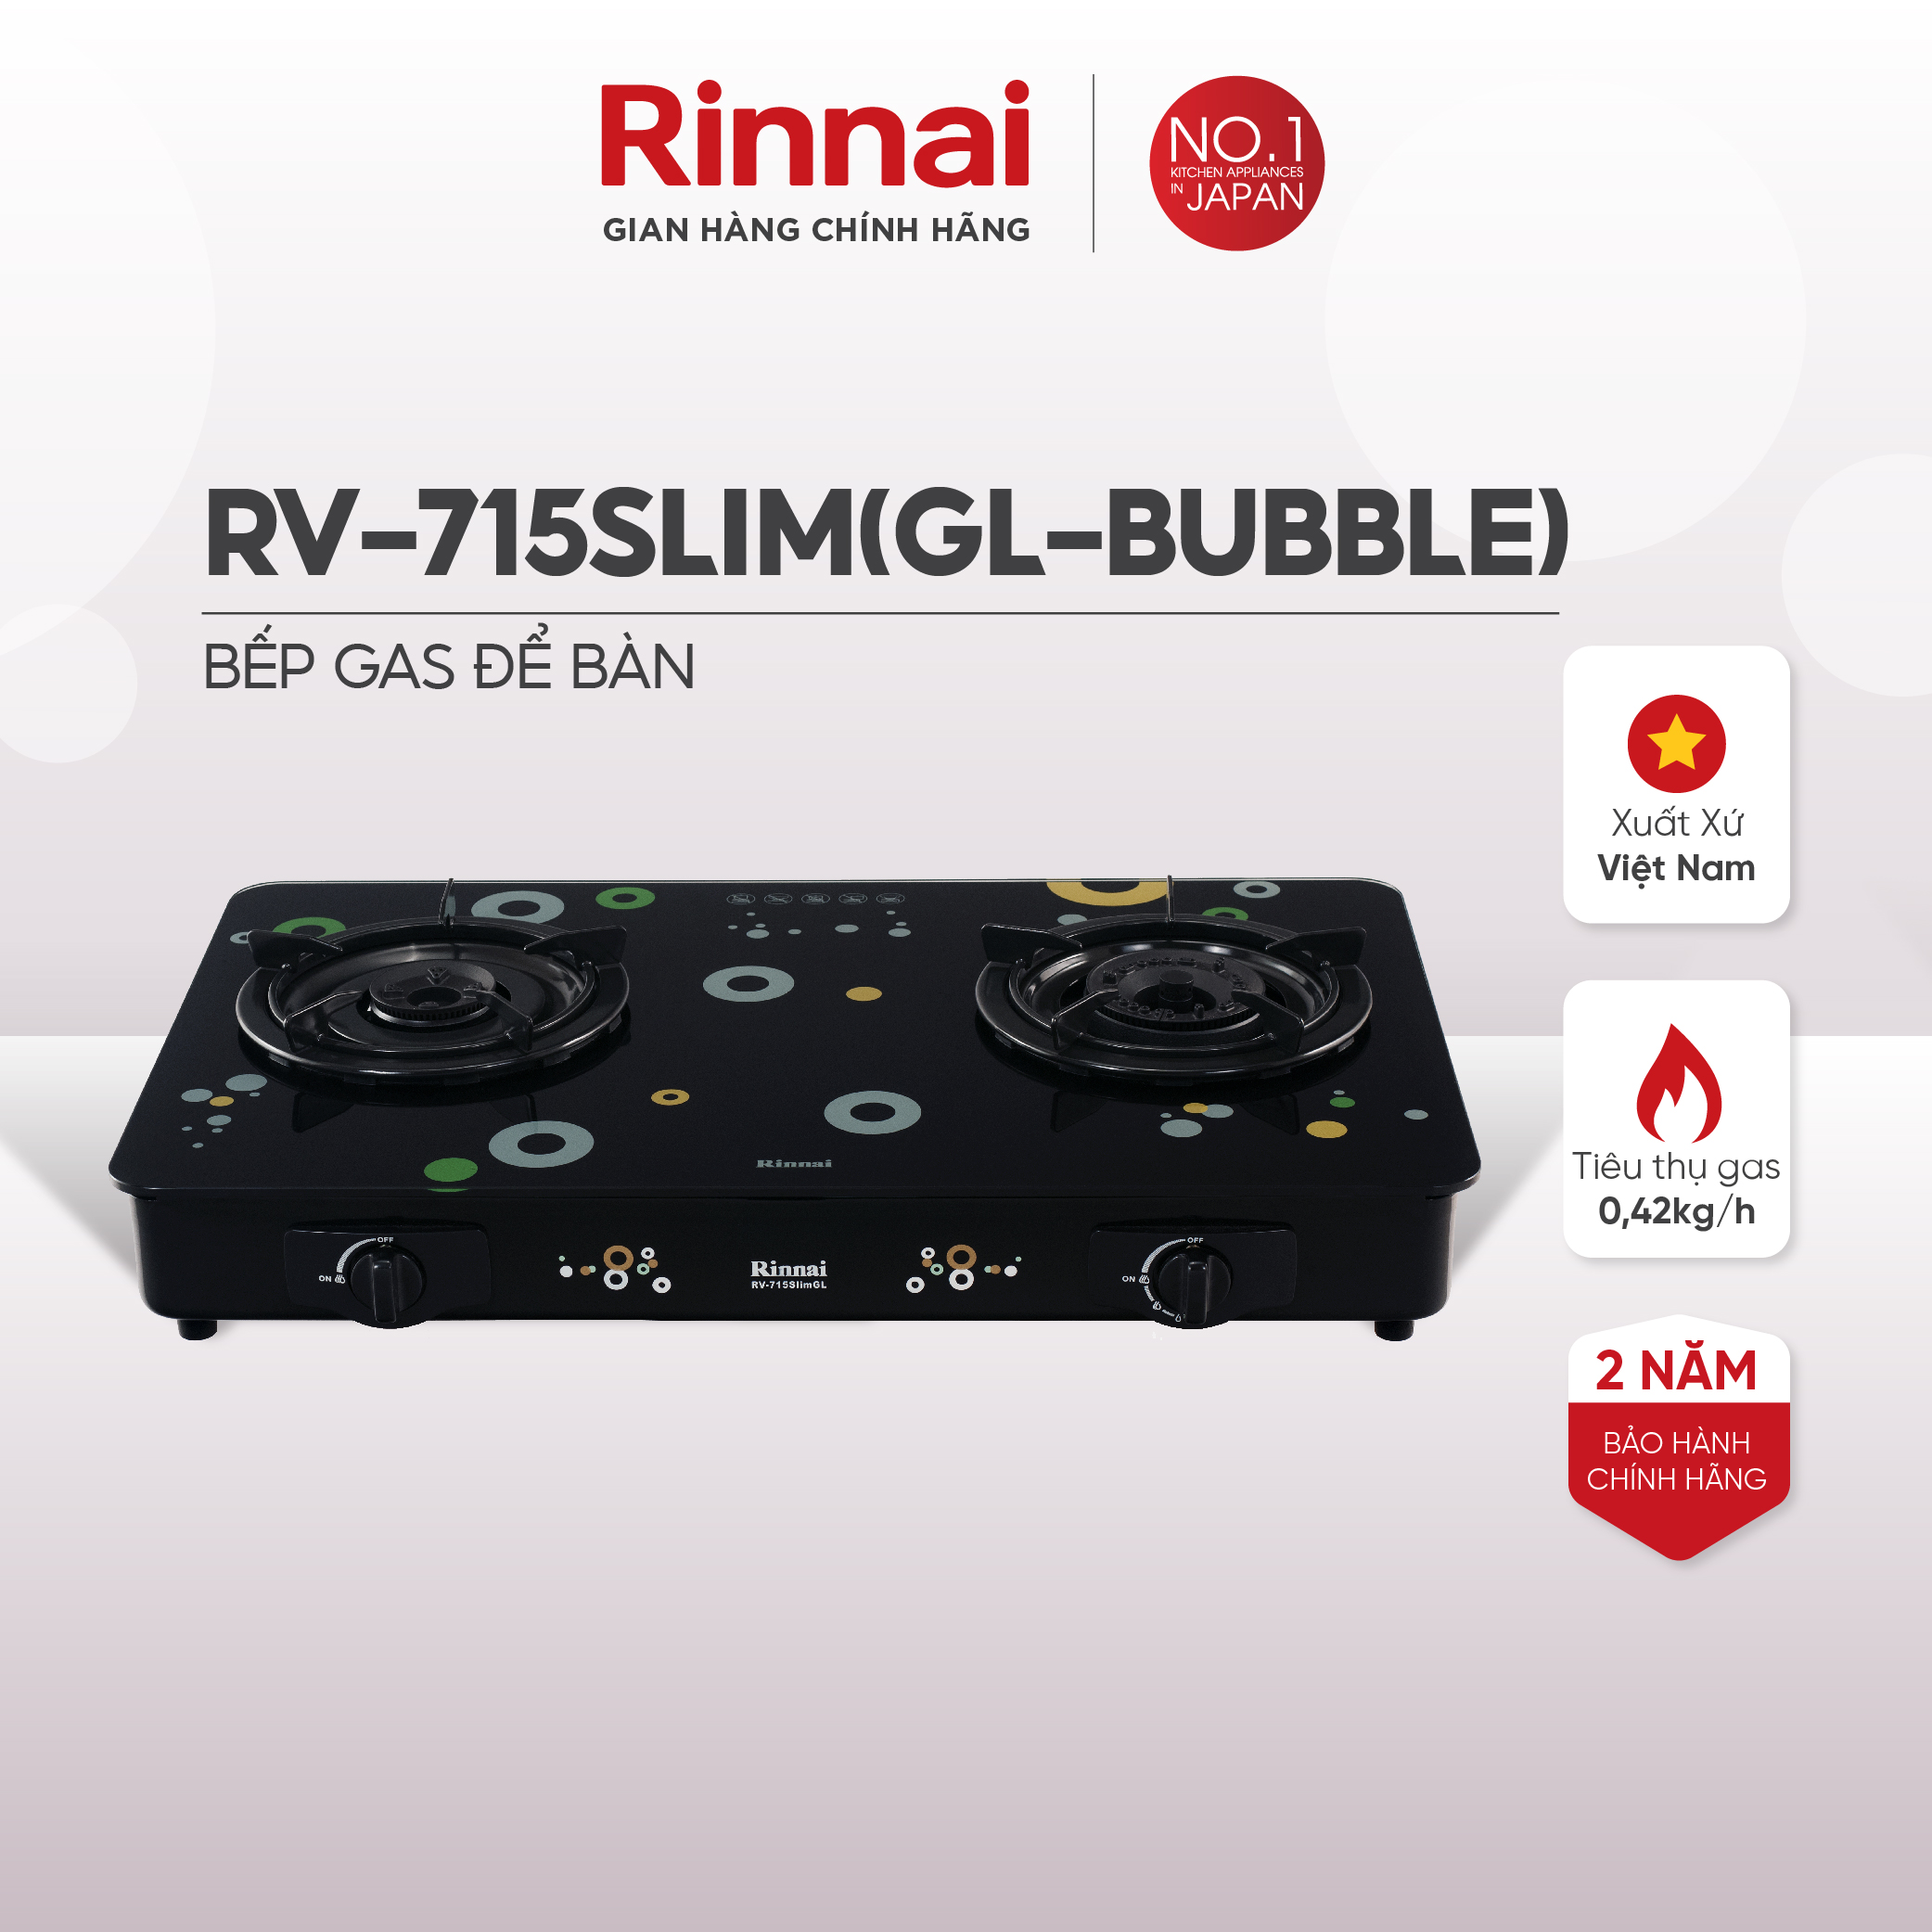 Bếp gas dương Rinnai RV-715Slim(GL-Bubble) mặt bếp kính và kiềng bếp men - Hàng chính hãng.